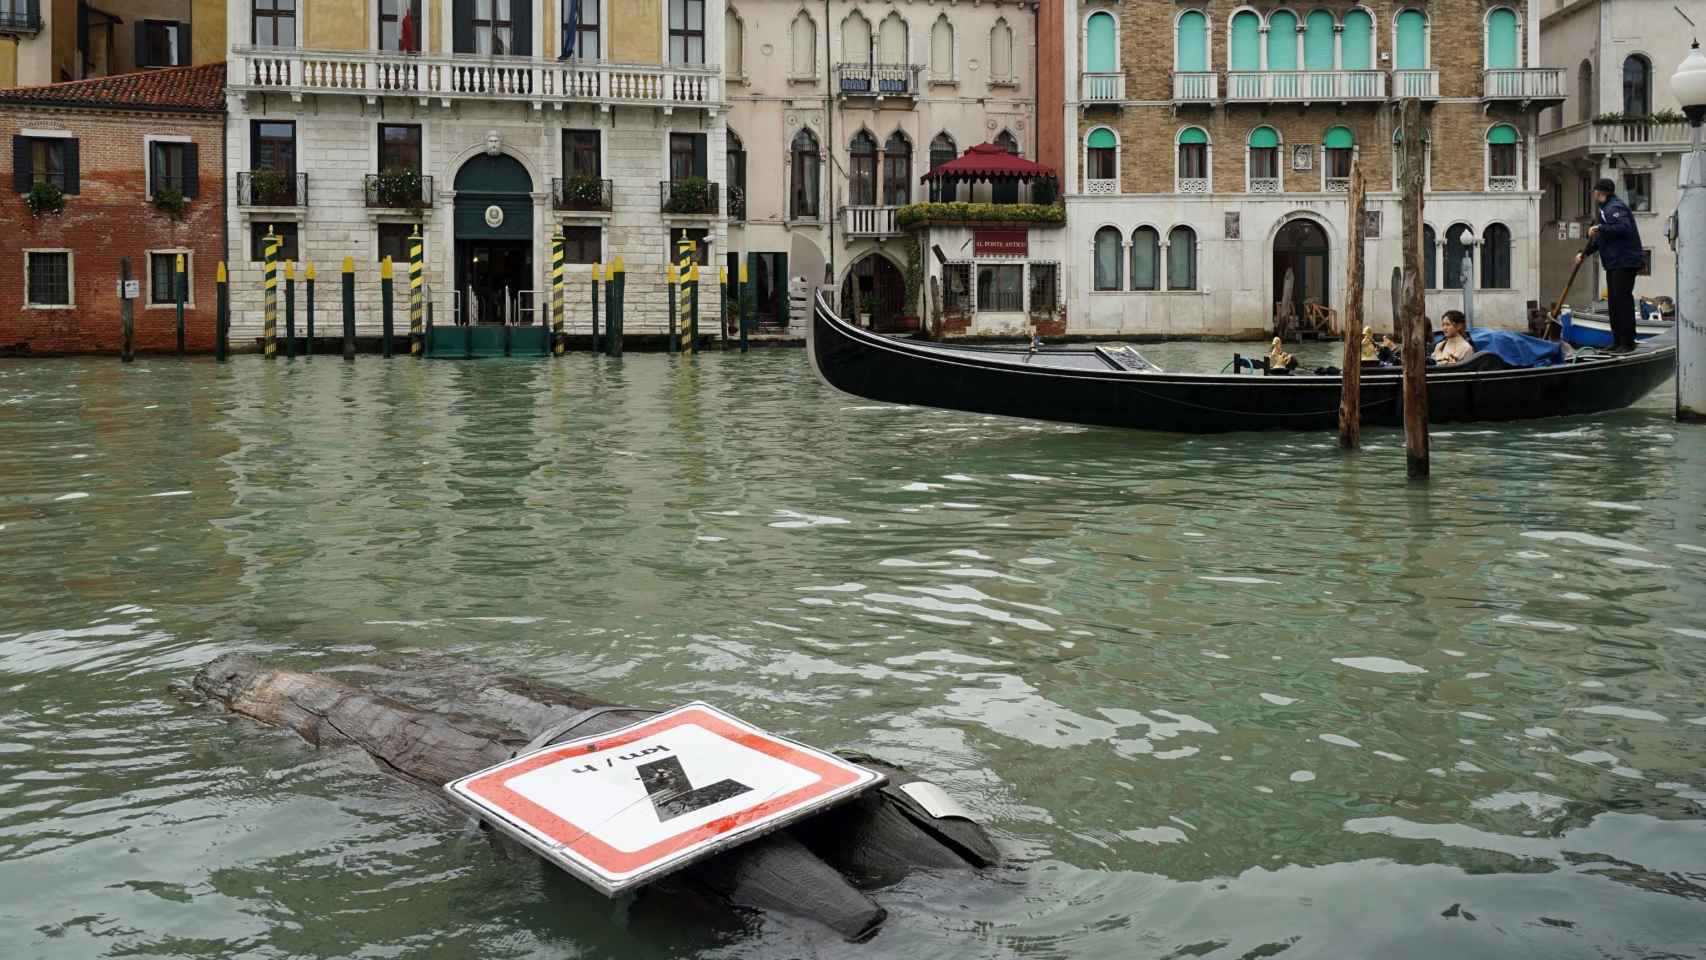 Vista de una señal derribada durante una de las tormentas que han caído sobre Venecia.